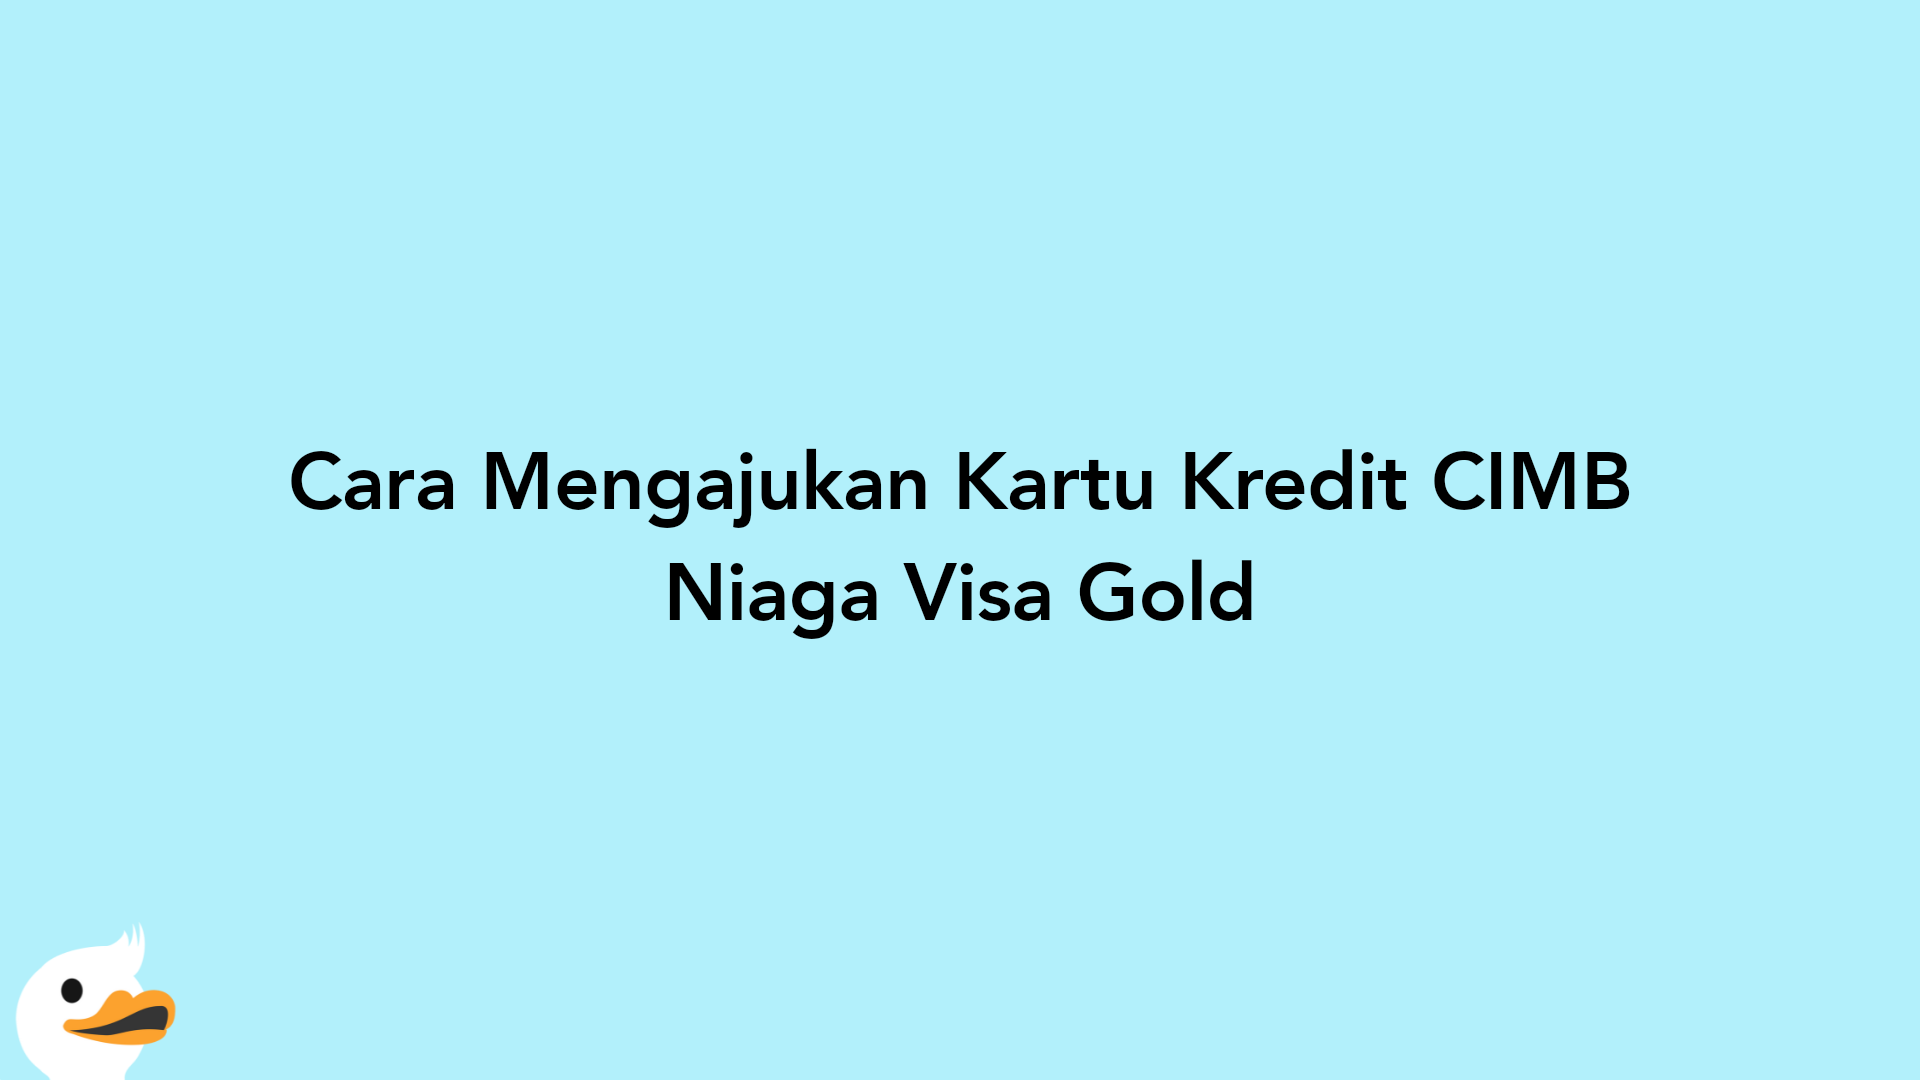 Cara Mengajukan Kartu Kredit CIMB Niaga Visa Gold